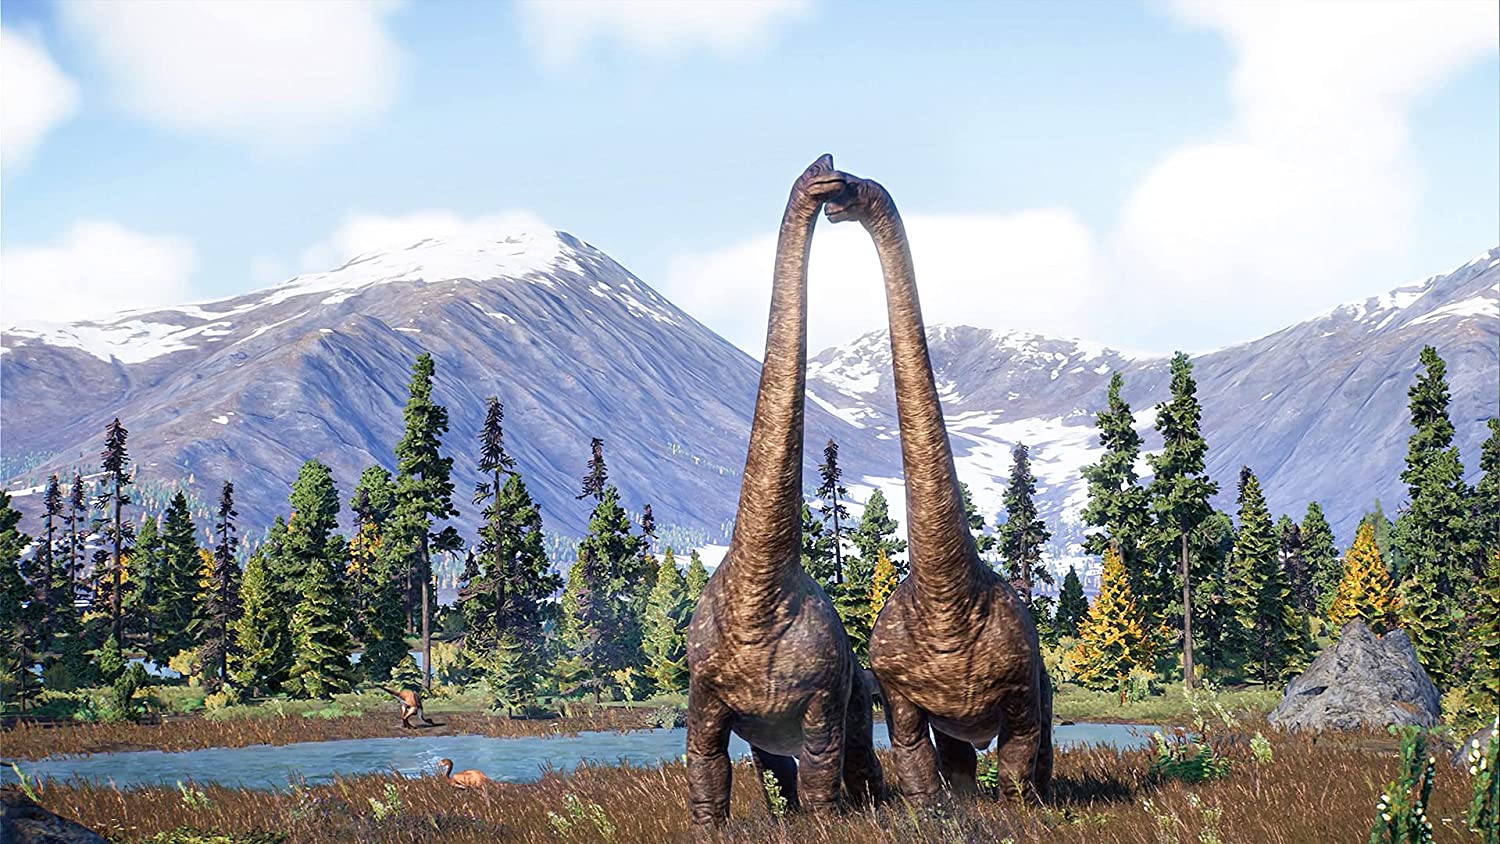 Jurassic World Evolution 2 For PlayStation 5 “Region 1” - Level UpLevel UpPlaystation Video Games8.12E+11